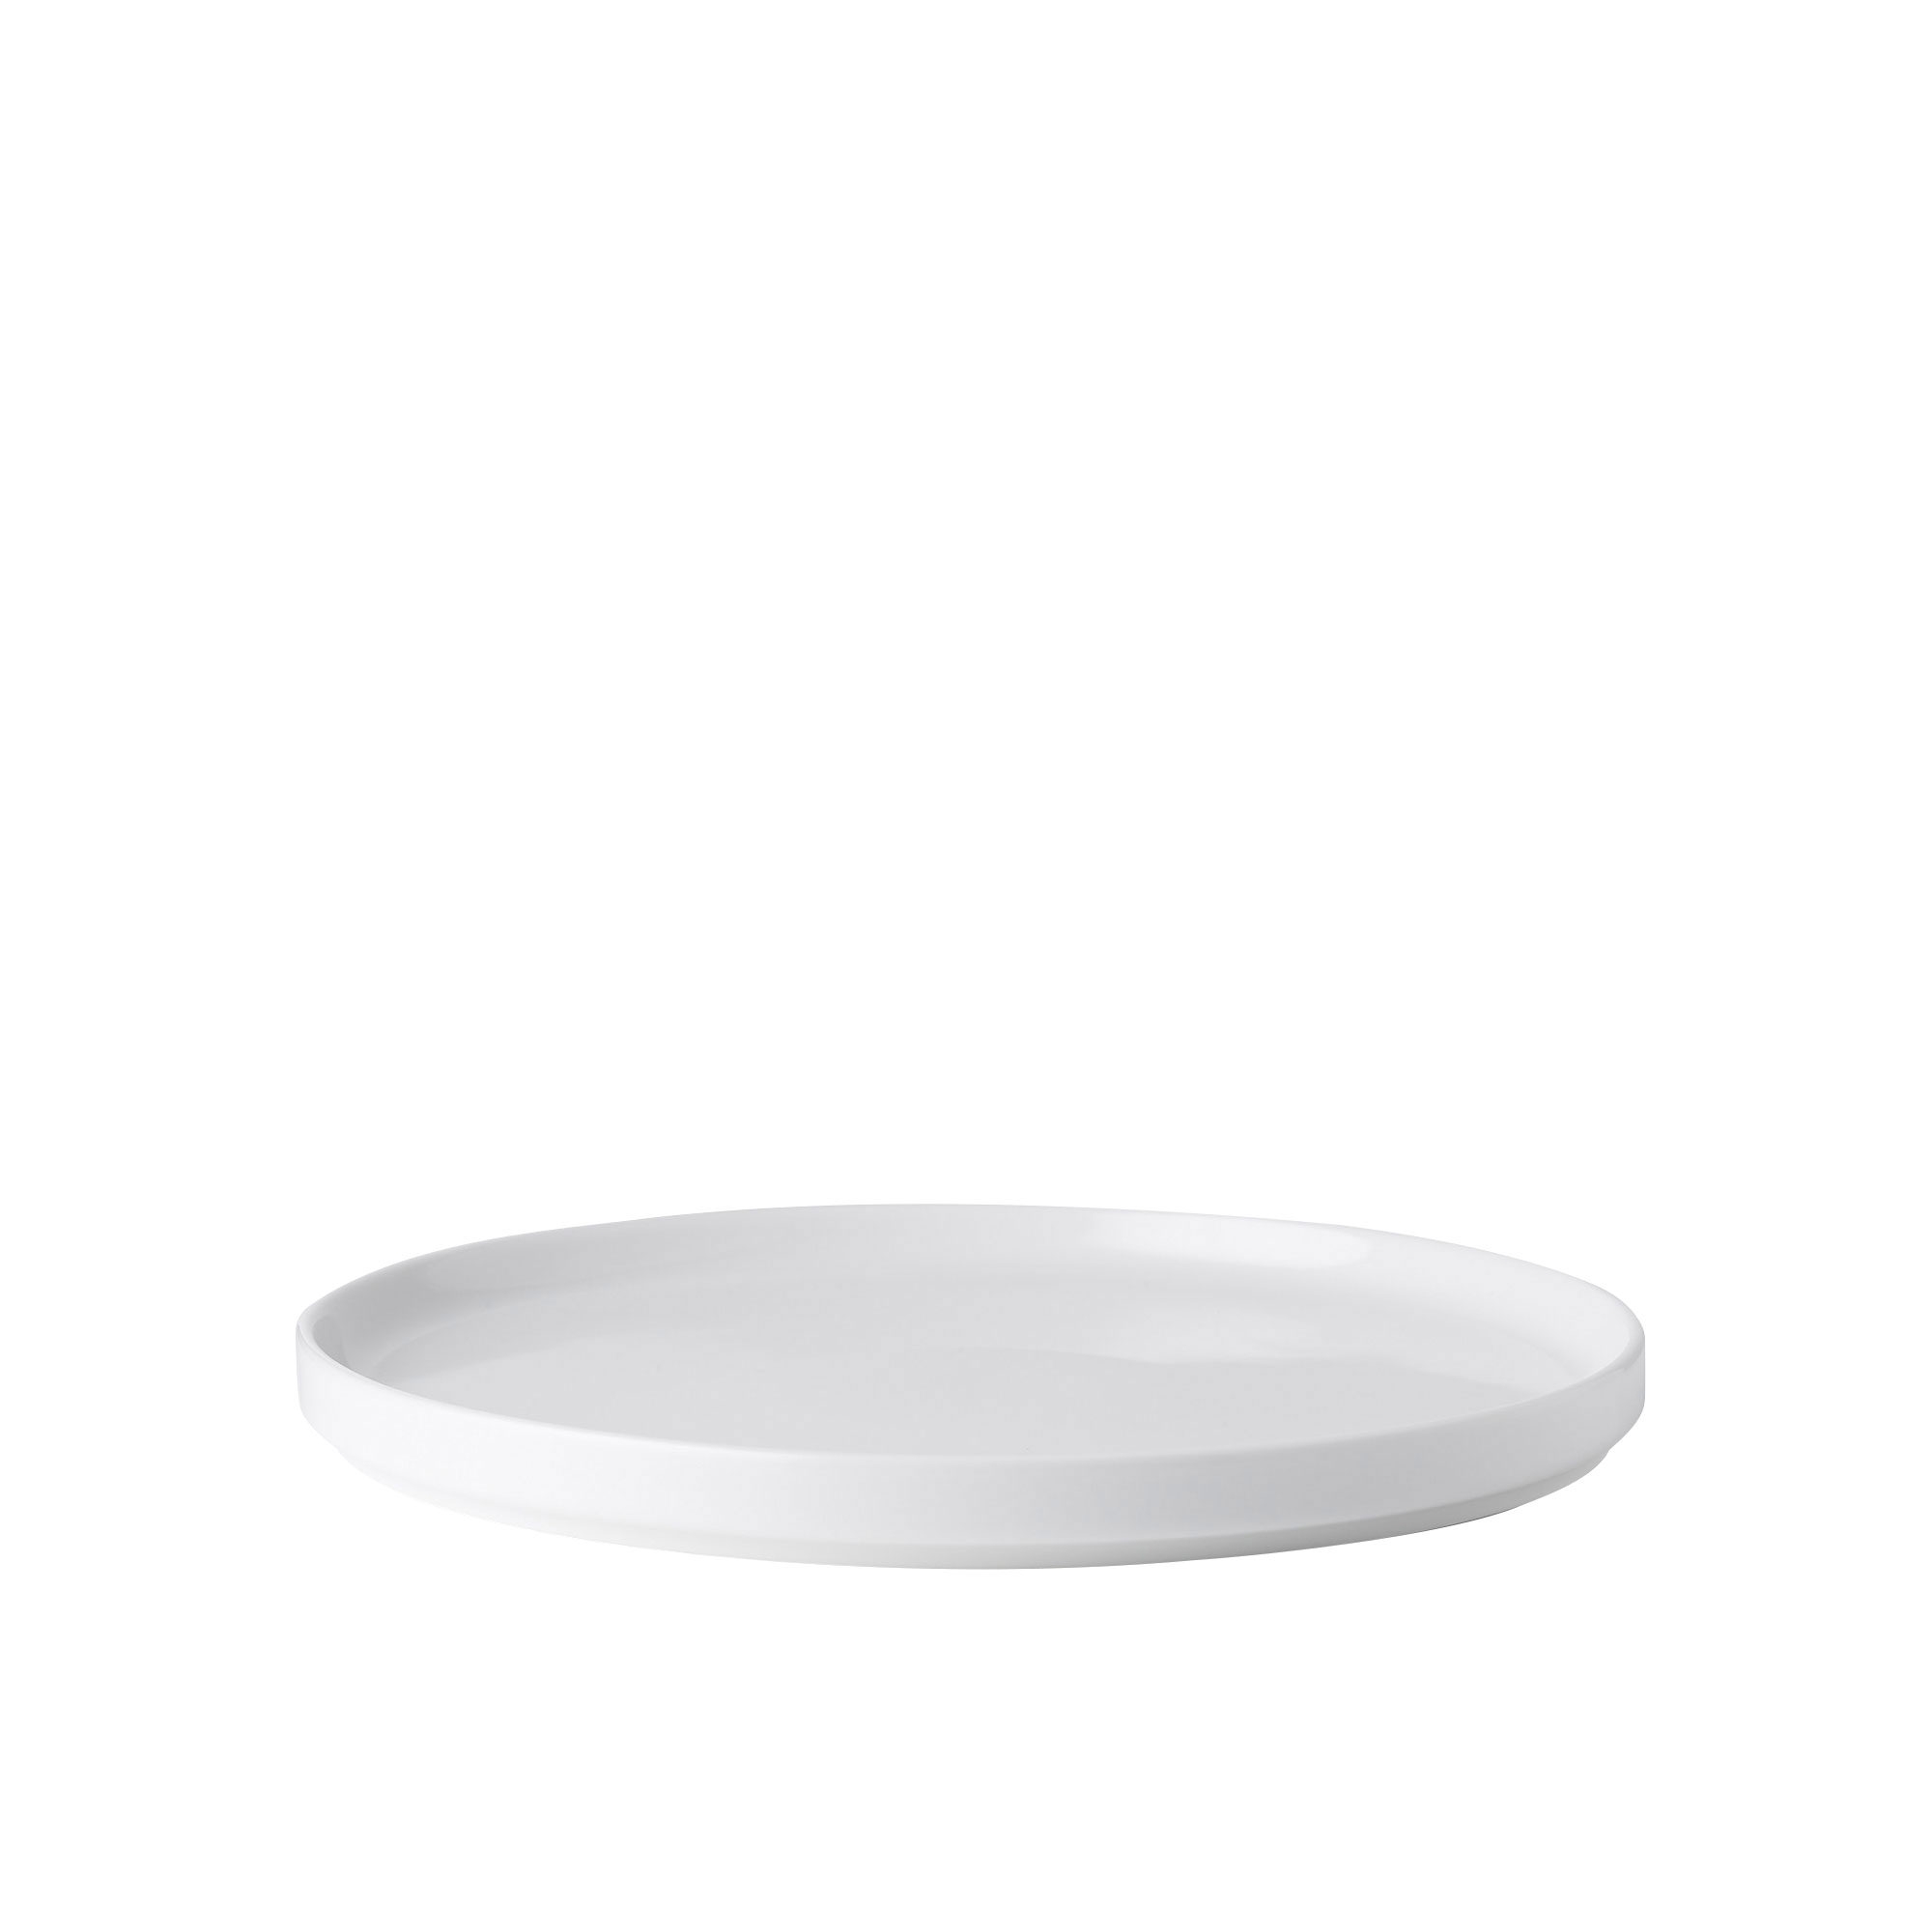 Noritake Stax White Dinner Plate Set of 4 Image 2